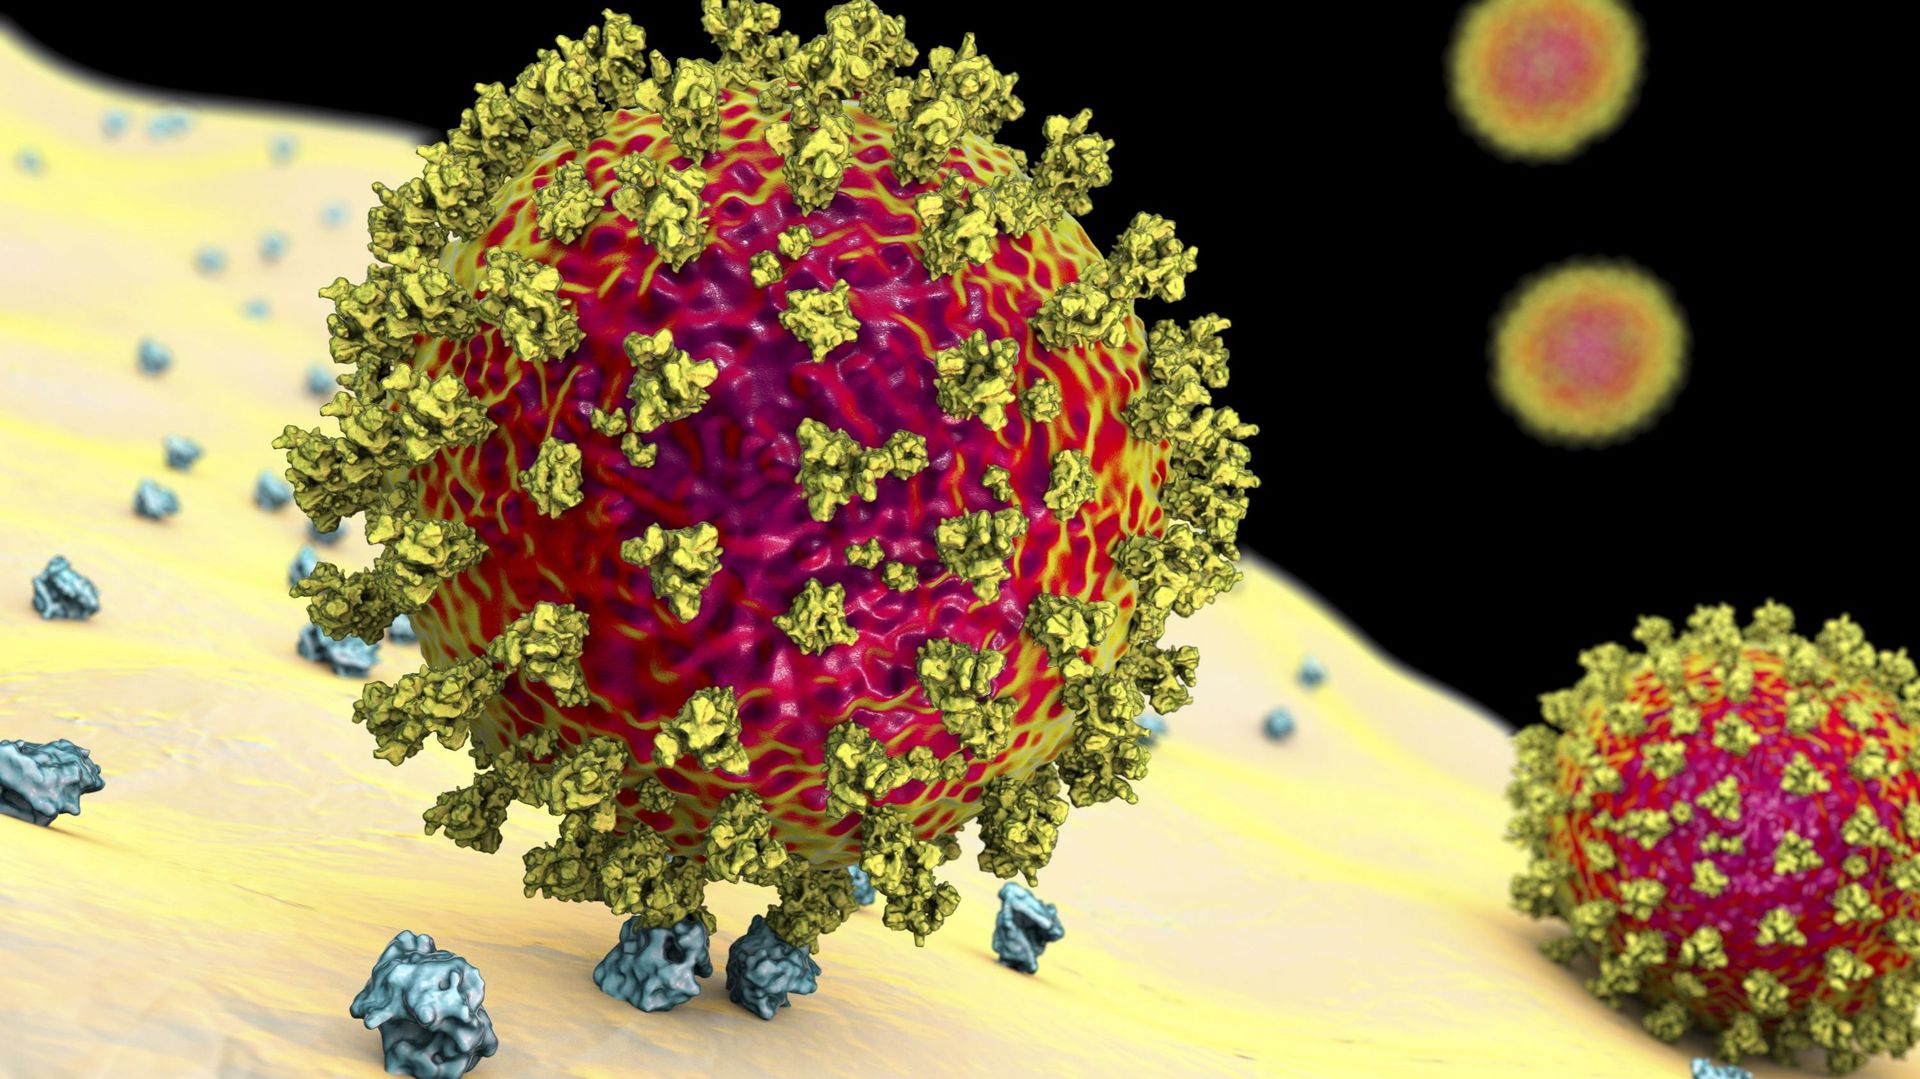 La protéine Spike, présente à la surface du SARS-CoV-2, lui permet d’entrer dans nos cellules. C’est l’une des cibles de notre système immunitaire et la cible privilégiée des vaccins développés actuellement, notamment ceux basés sur la technique de l’ARN 